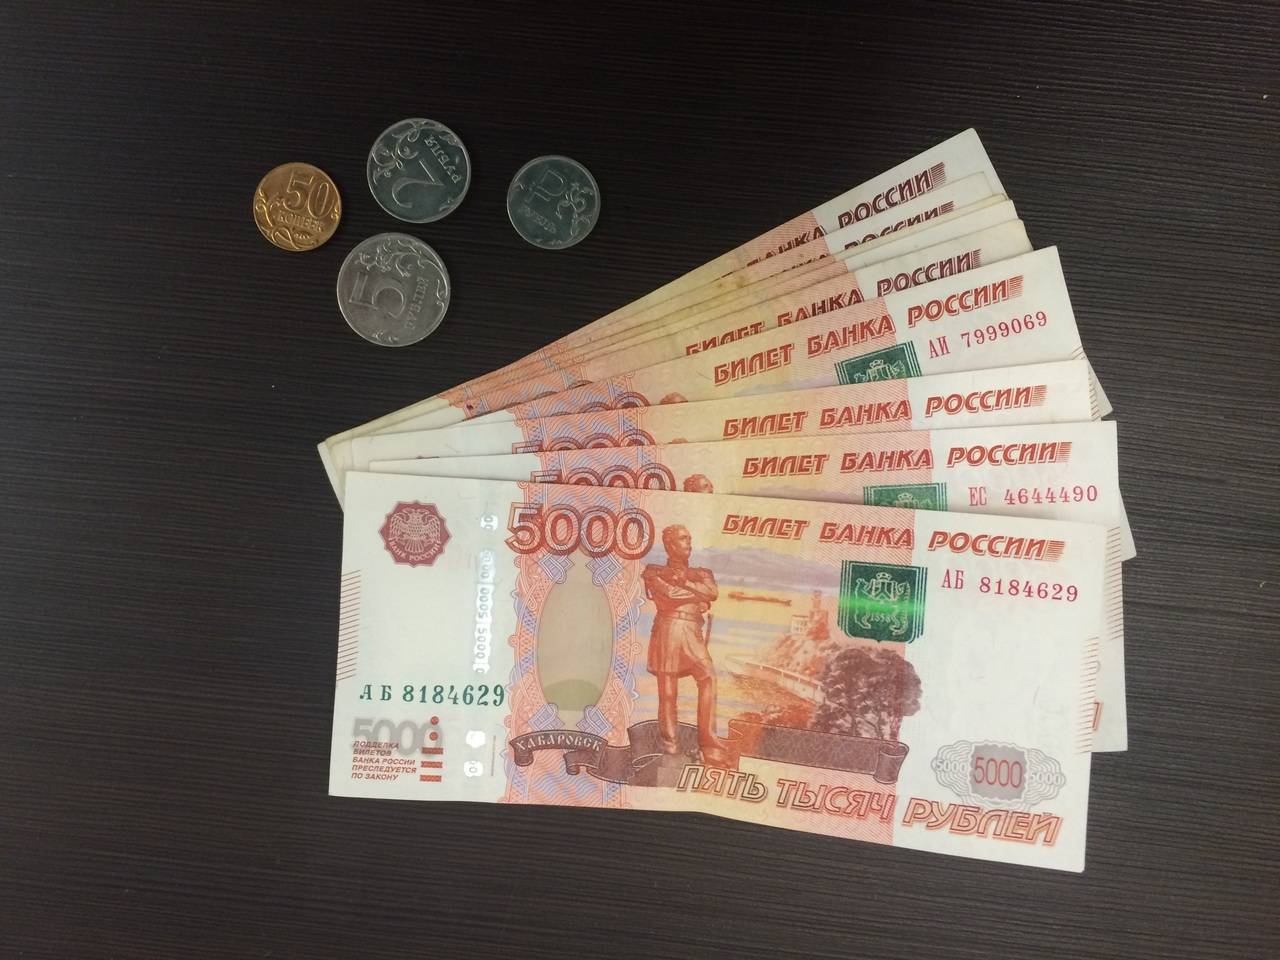 Типографию по изготовлению фальшивых денег ликвидировали на Северном Кавказе